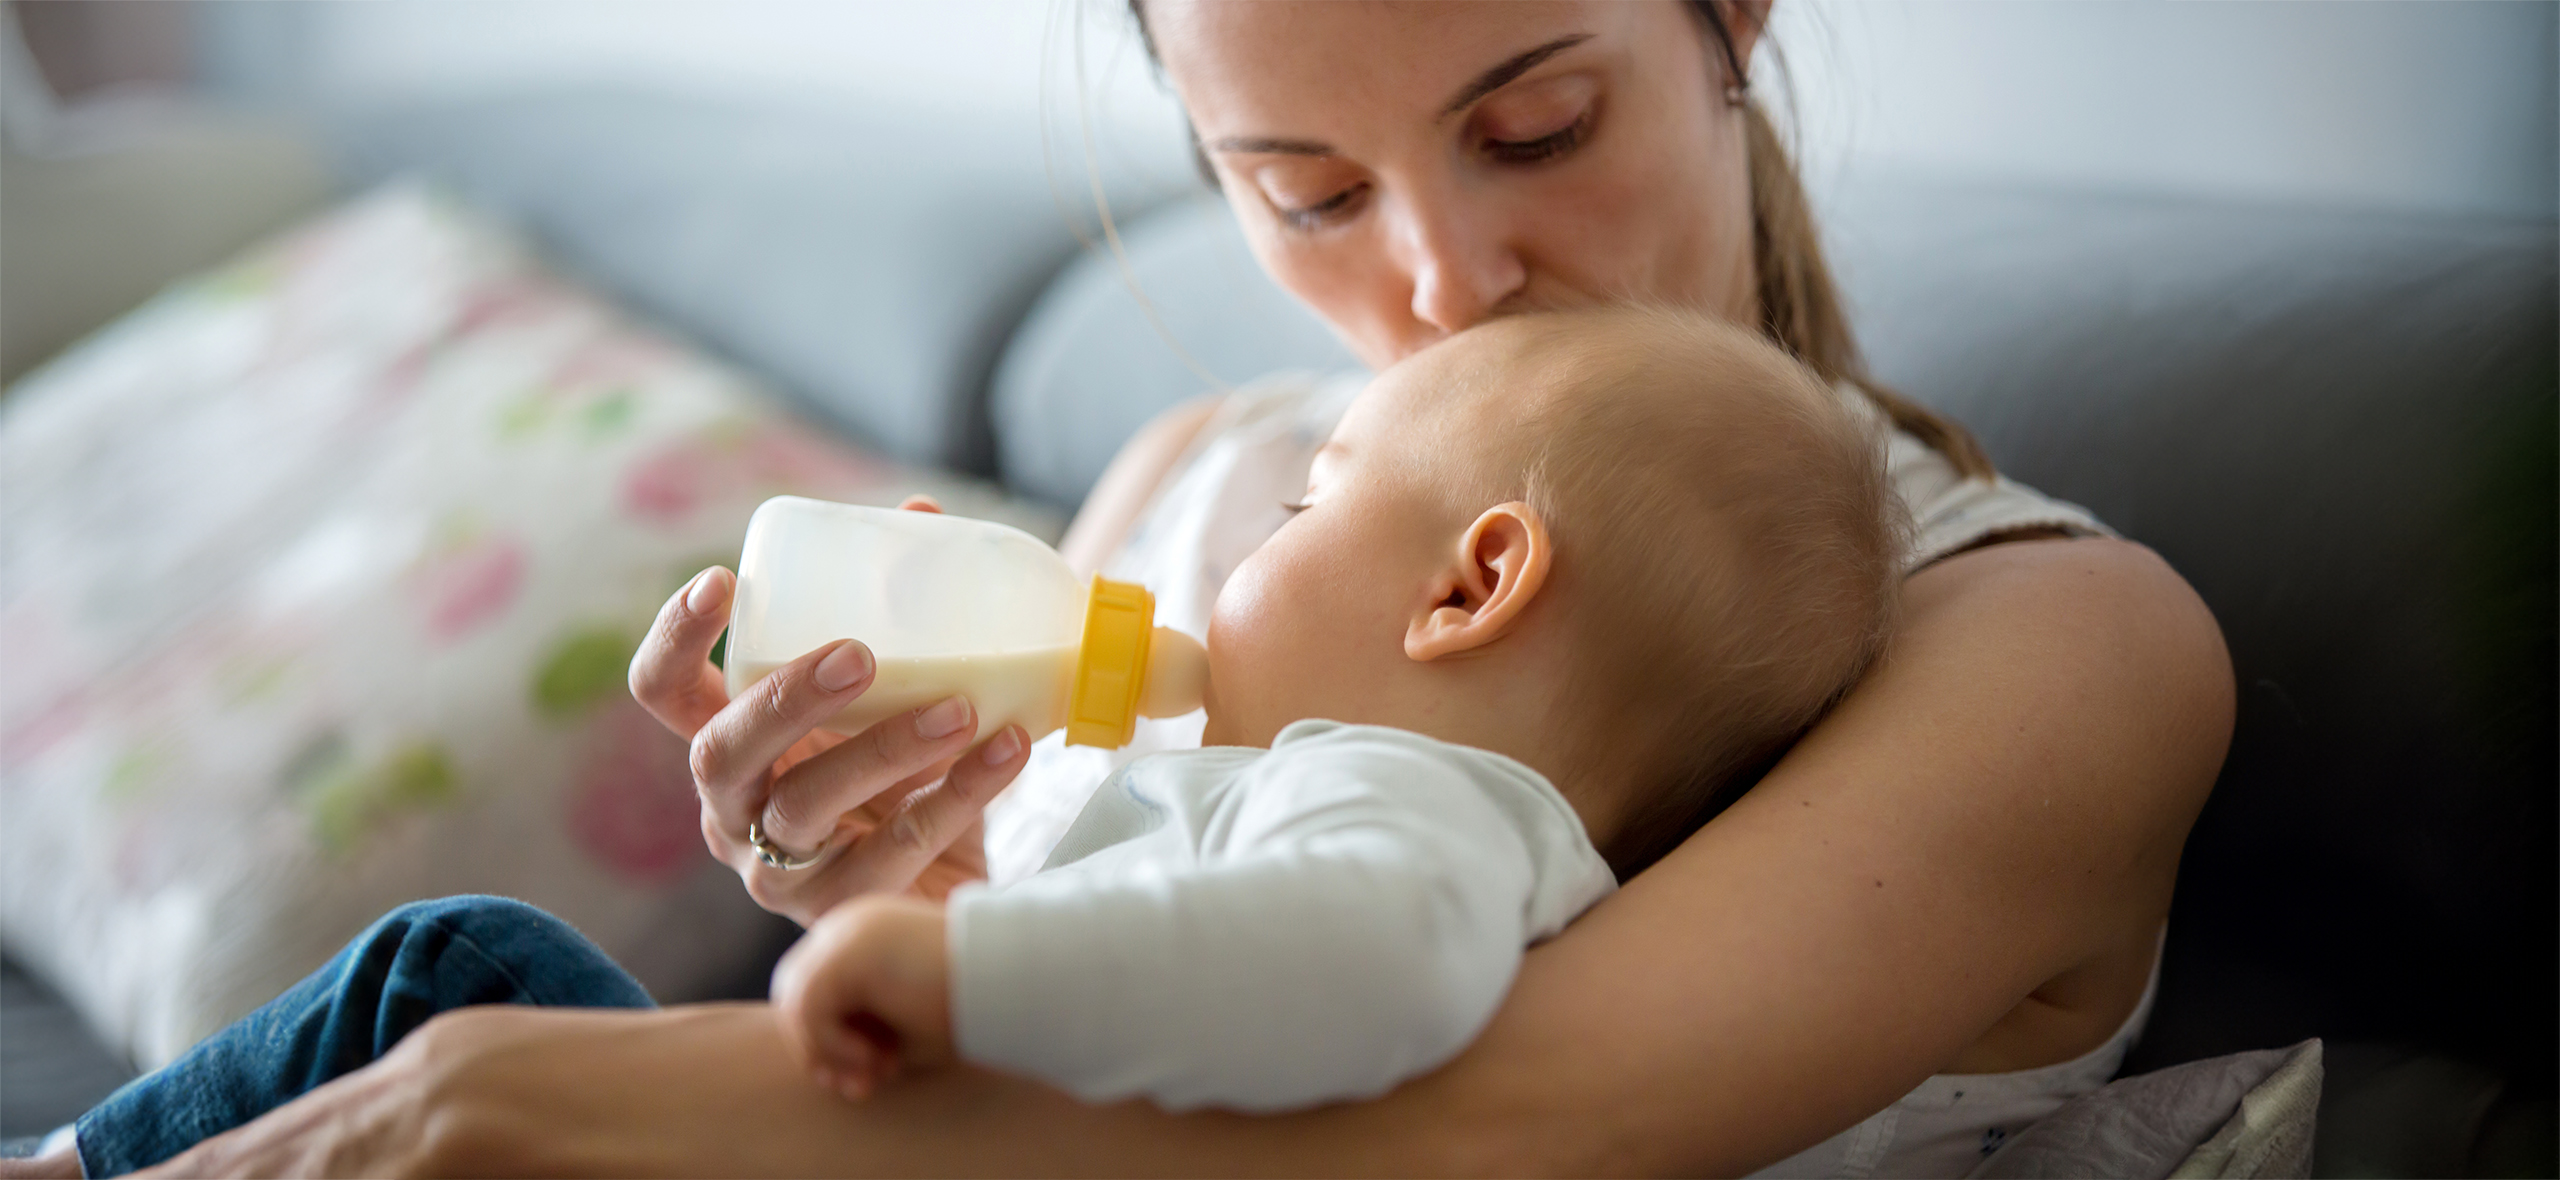 «Приятно видеть рост ребенка, кото­рого вскормила»: как рабо­тает обмен грудным молоком